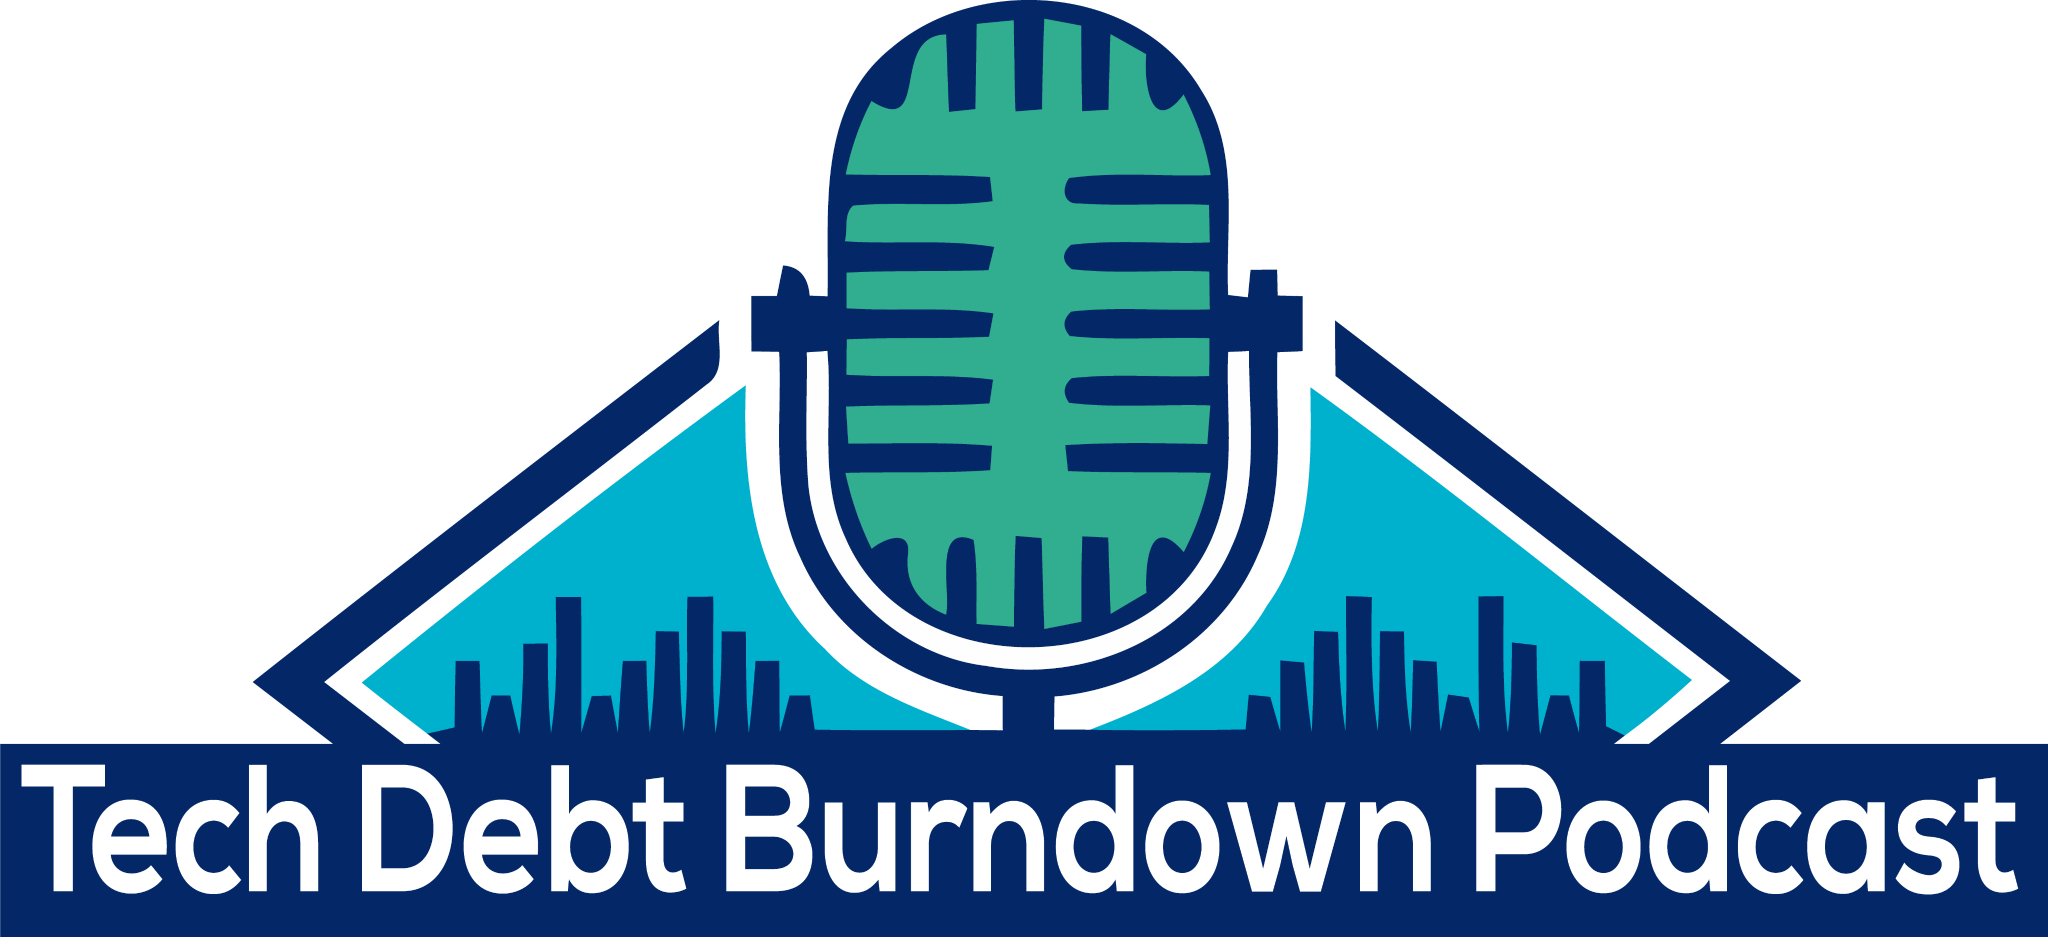 Tech Debt Burndown Podcast Series 1 E10: Eoin Woods